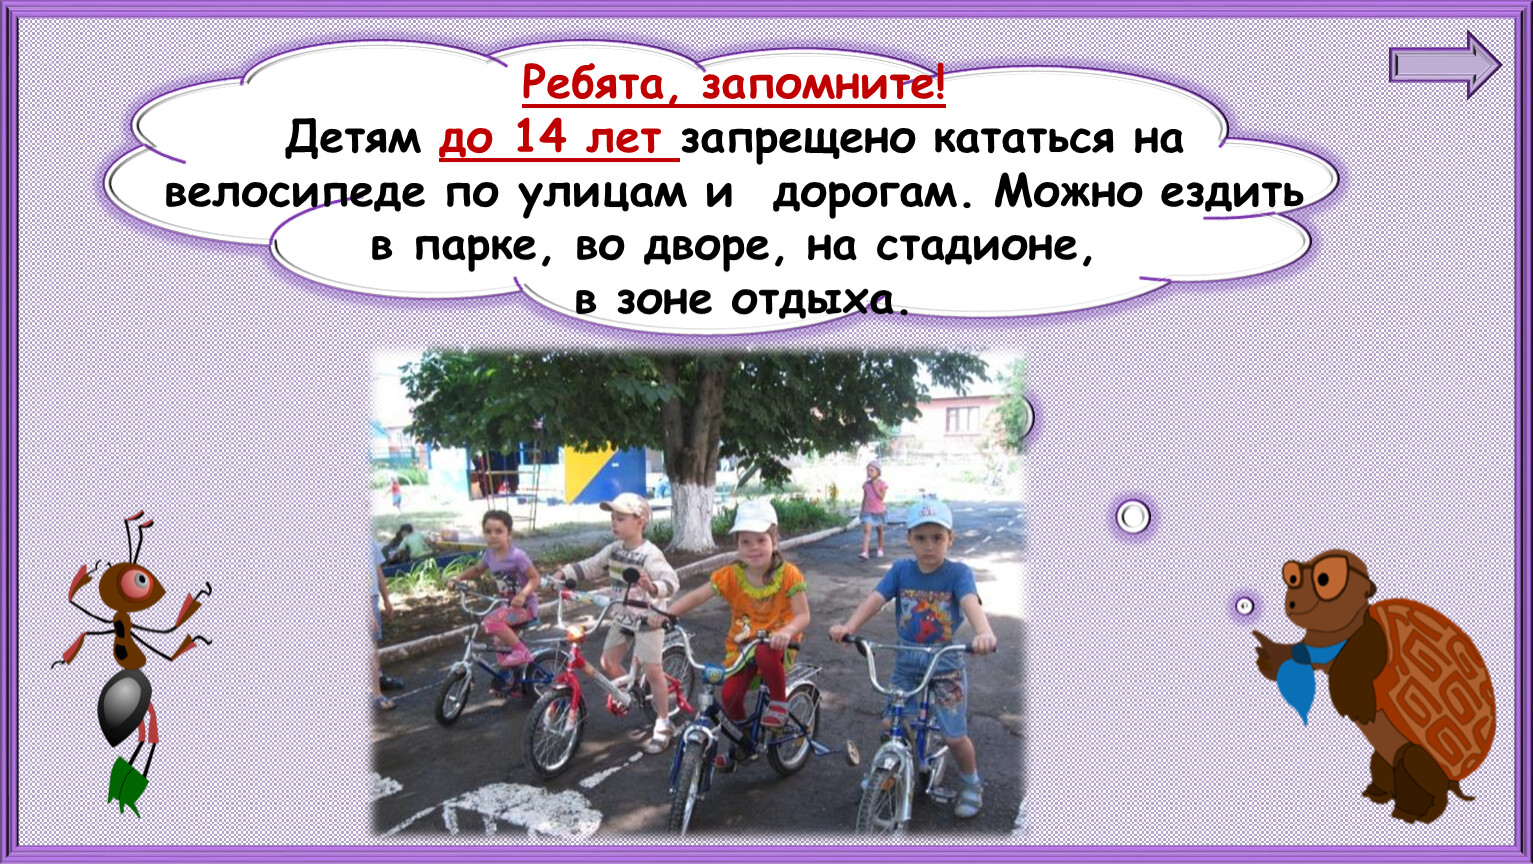 Можно ездить с запретом. Можно кататься на велосипеде. Детям до 14 лет запрещено ездить на велосипеде. Можно ездить на велосипеде по дороге. Кататься на велосипеде по дороге запрещено.